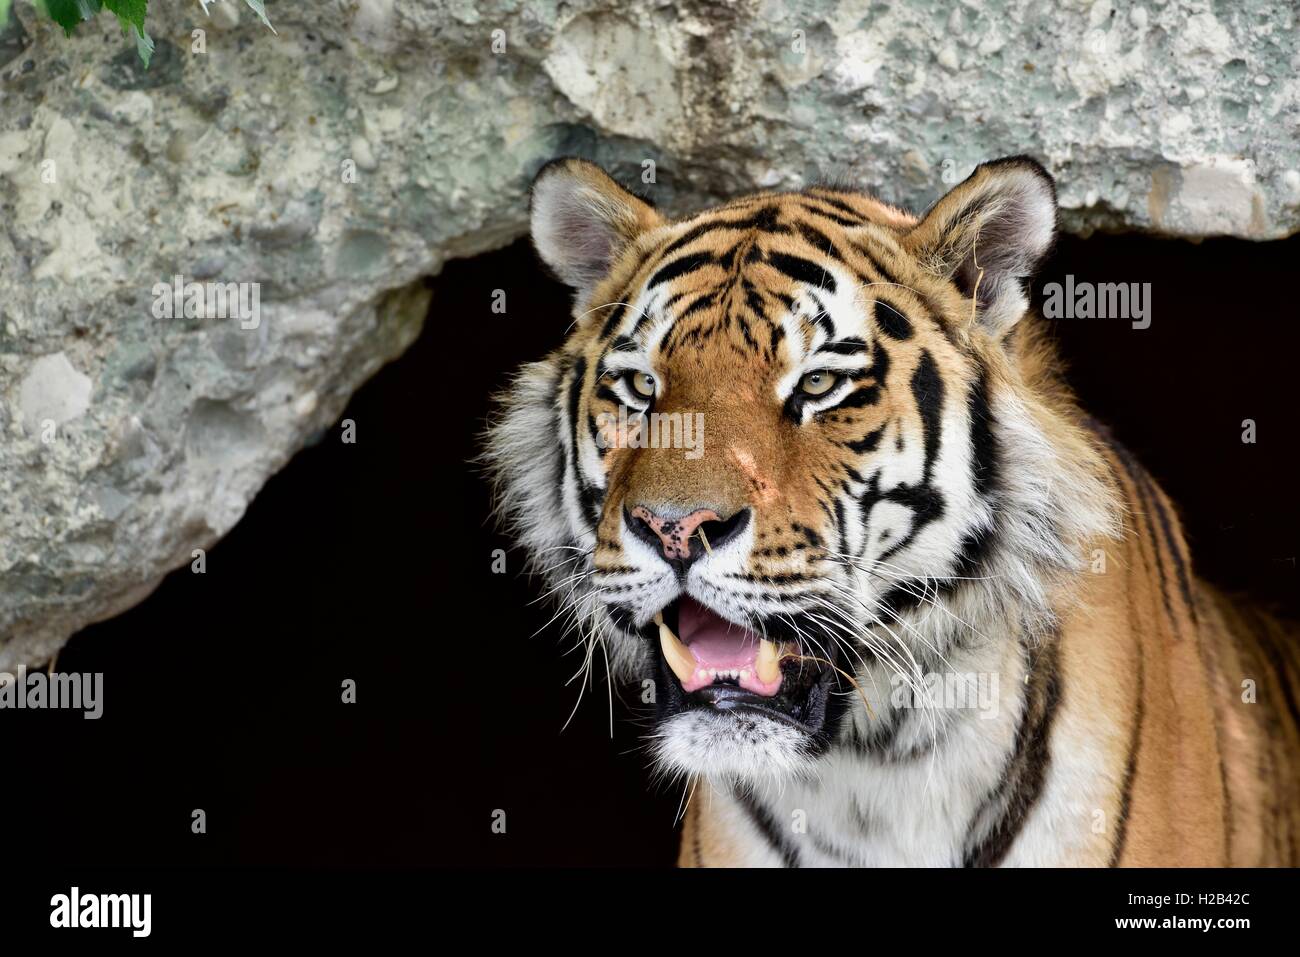 Amur o siberiano tigre (Panthera tigris altaica), retrato, cautiva, Munich, Baviera, Alemania Foto de stock